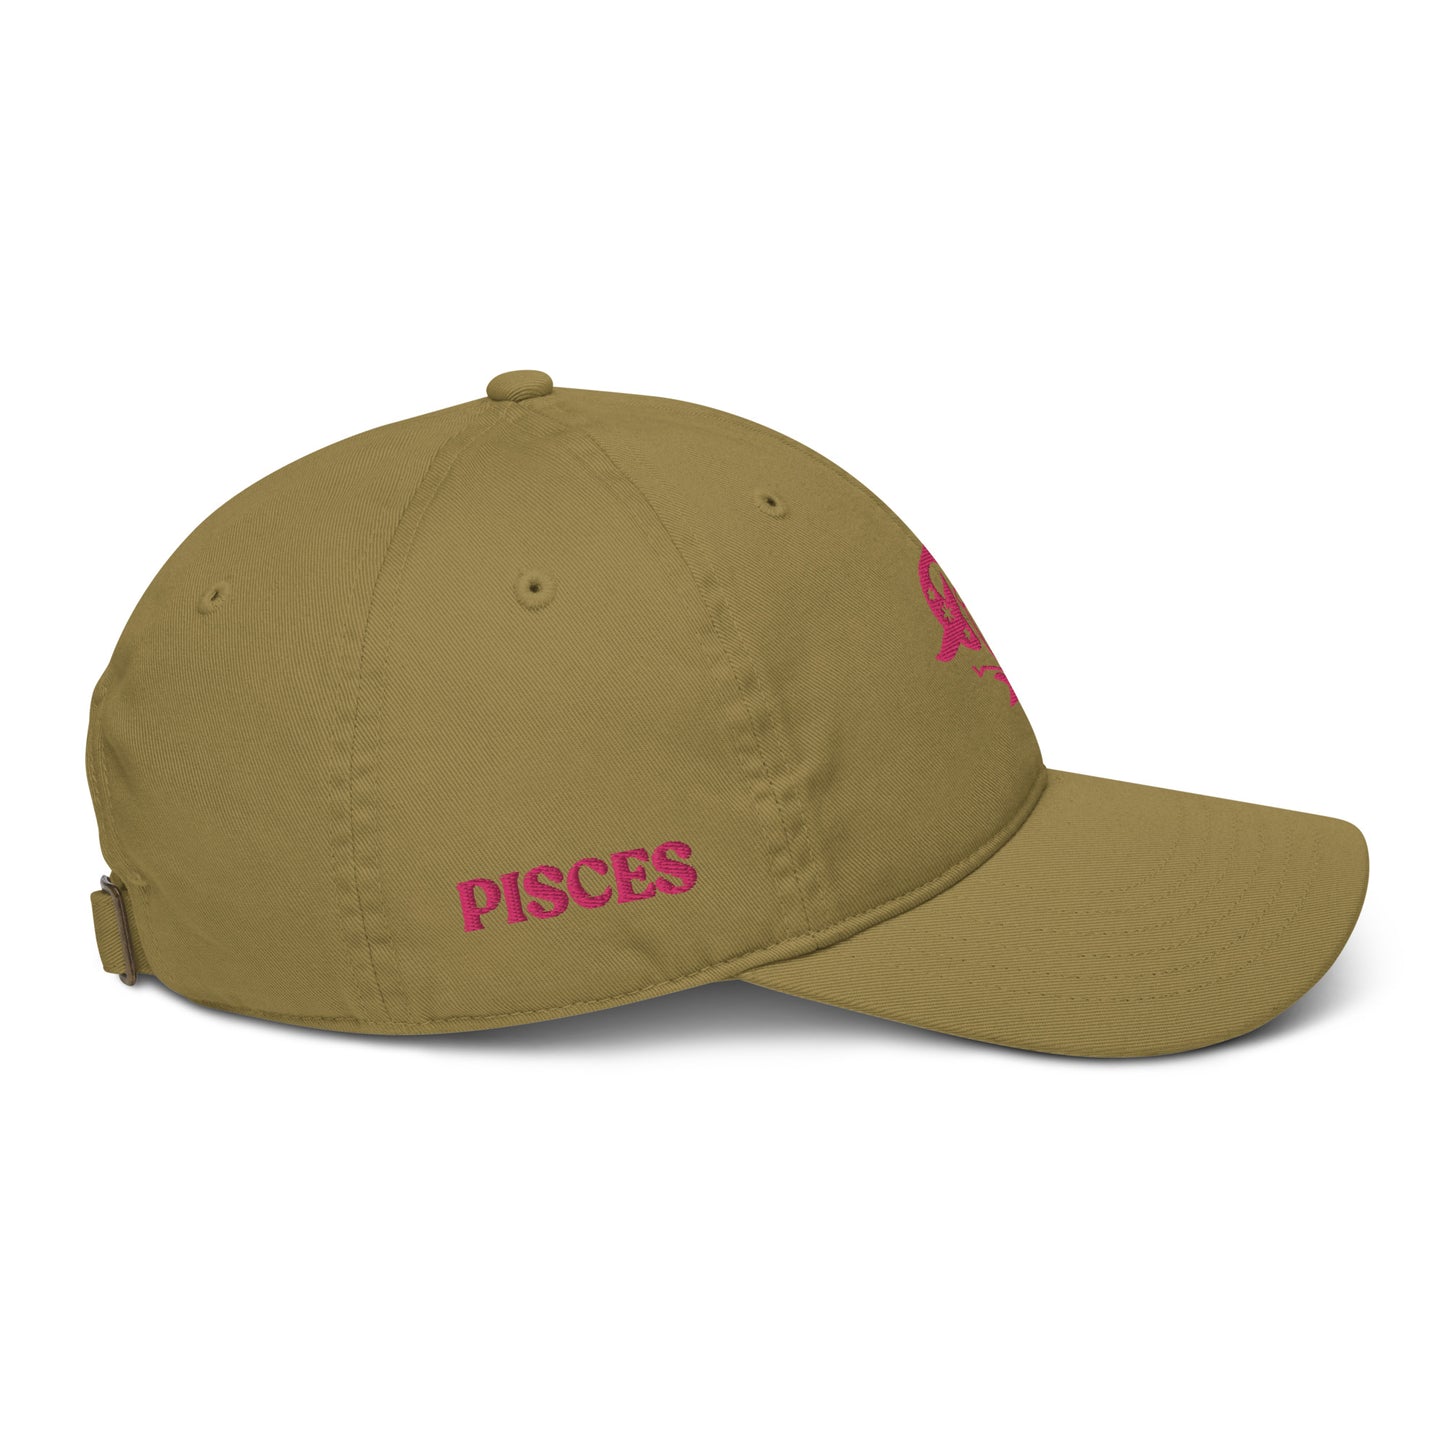 PISCES - ORGANIC HAT